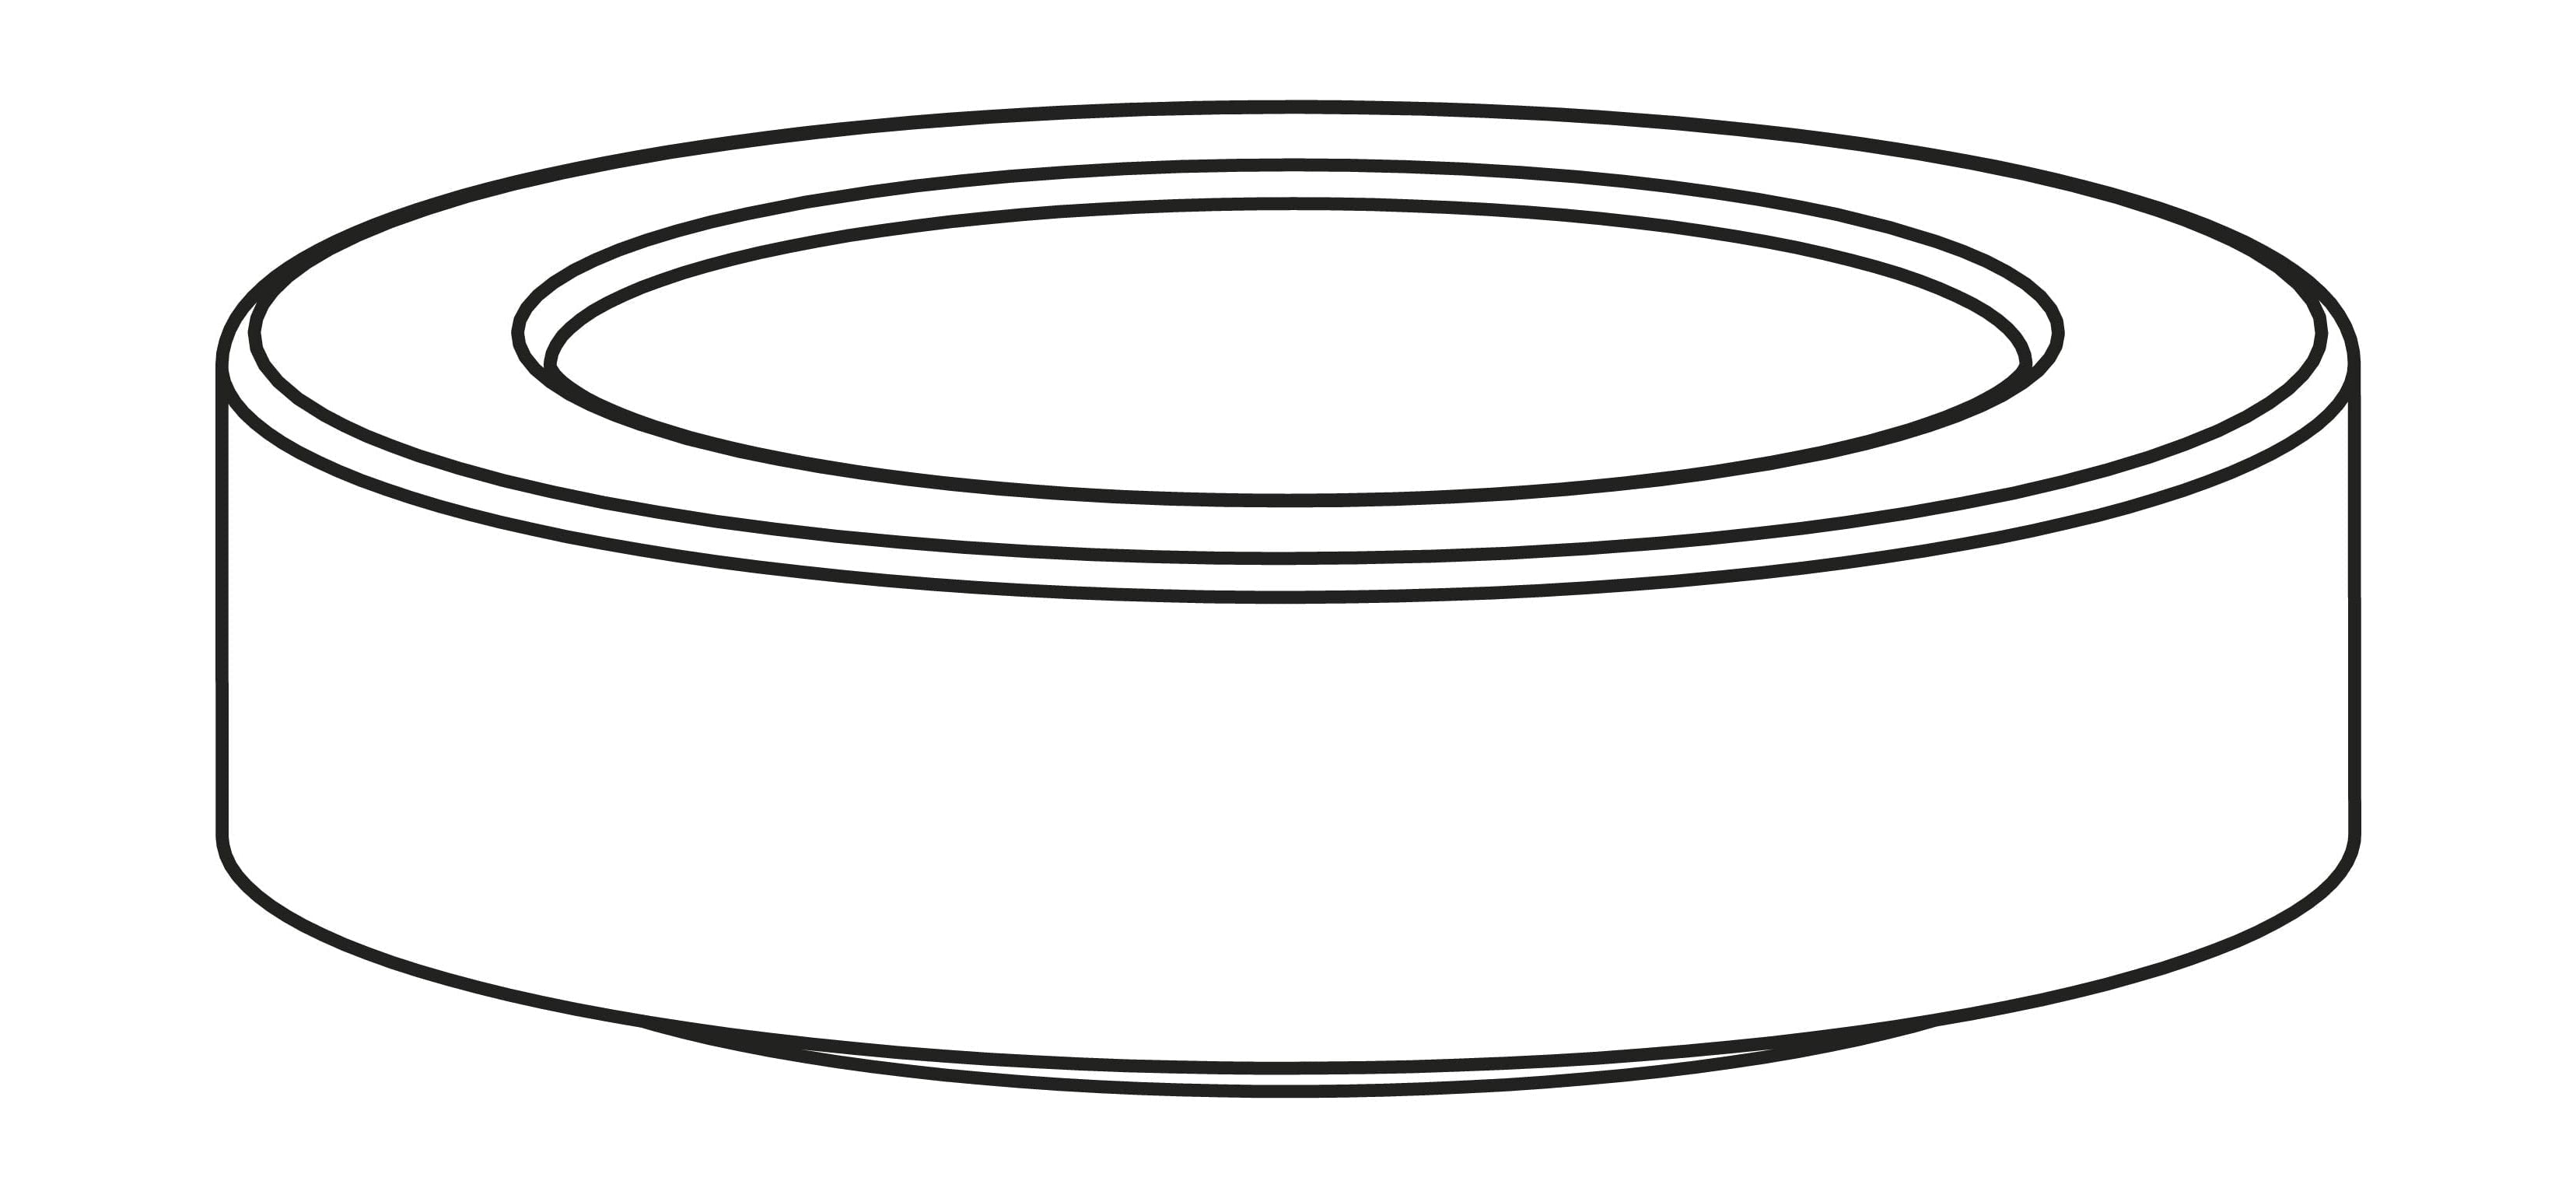 Stelton Amphora -förpackning för termos kanna - 221, 222, svart